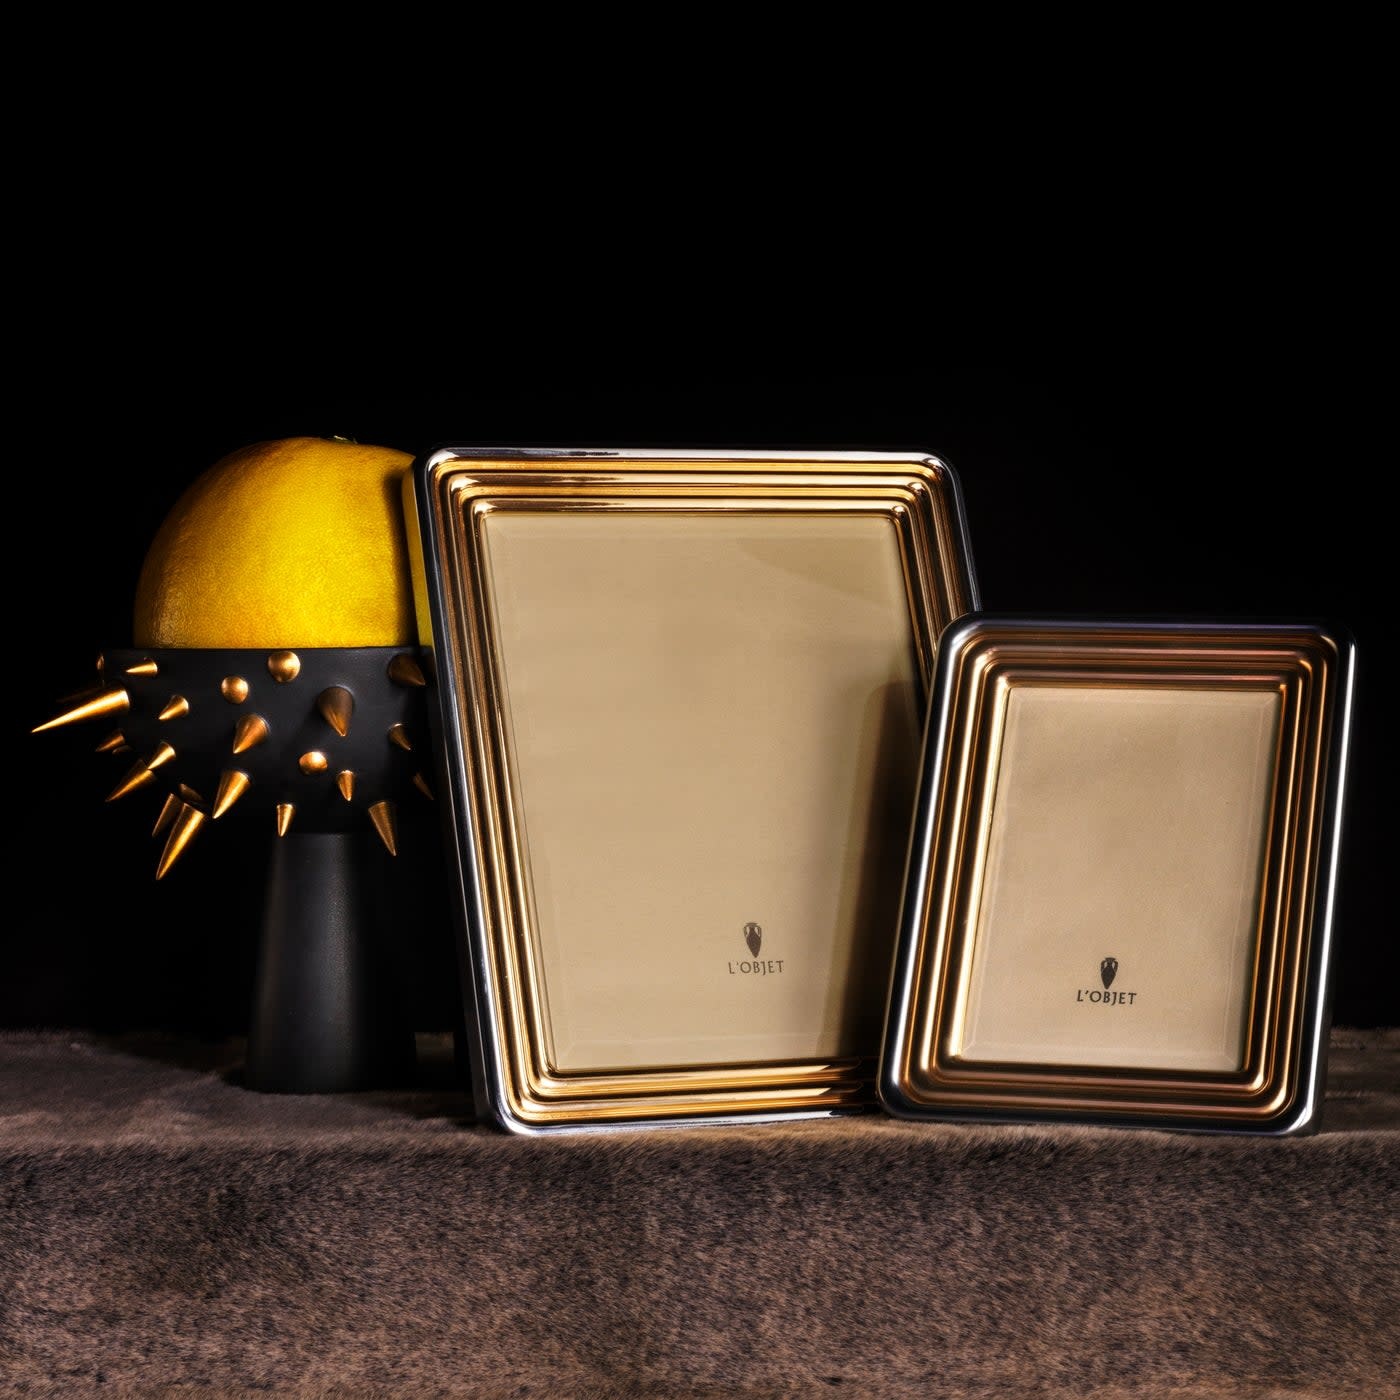 L'Objet Rectangular Pave miniature picture frame, platinum, picture size 5  x 8 cm (2'' x 3'')